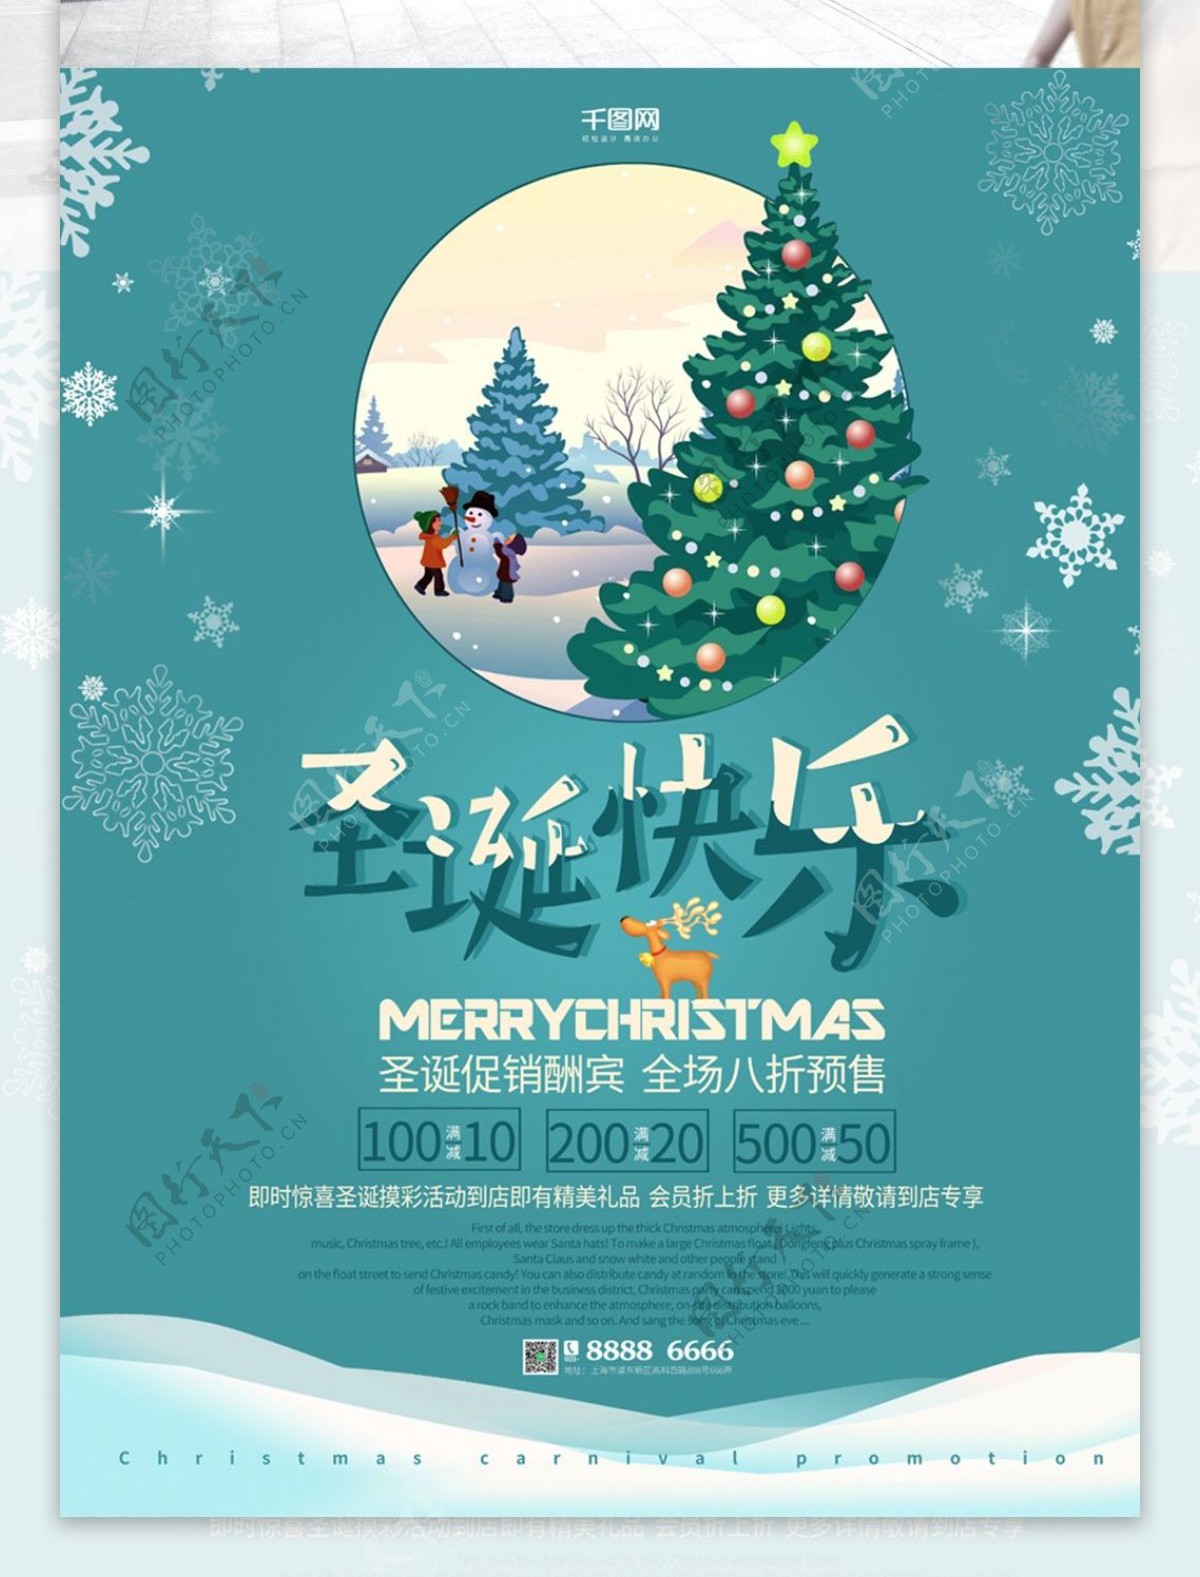 圣诞快乐促销节日海报PSD源文件